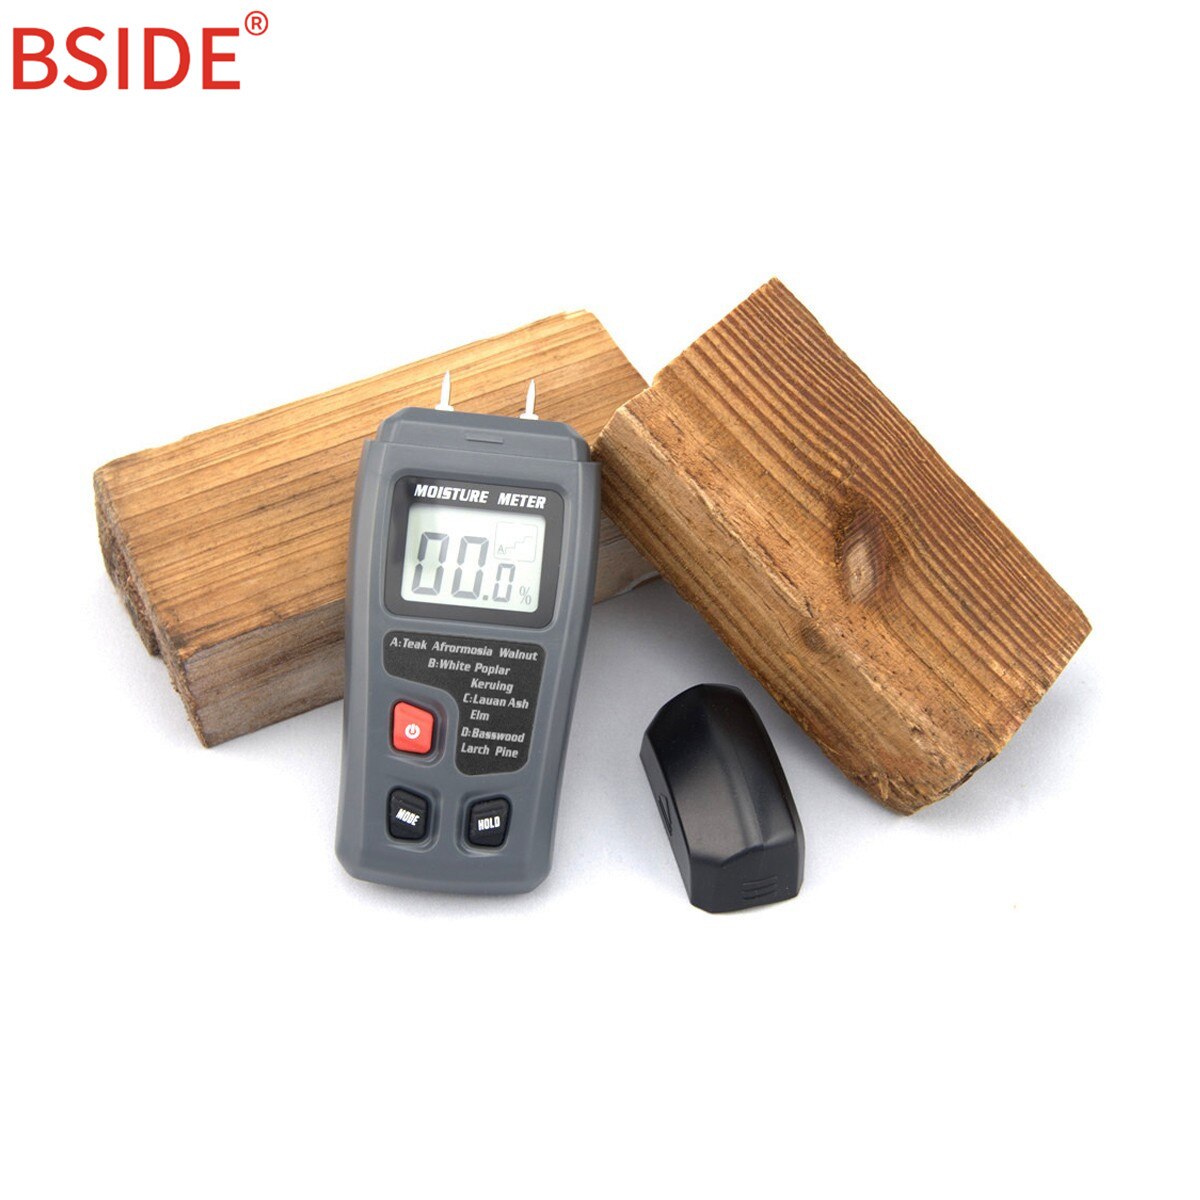  Taccometer Medidor de humedad de madera, detector de fugas de  agua digital, mide la humedad de la madera, material de construcción,  temperatura ambiental, 3 indicadores de colores, pantalla LCD digital 